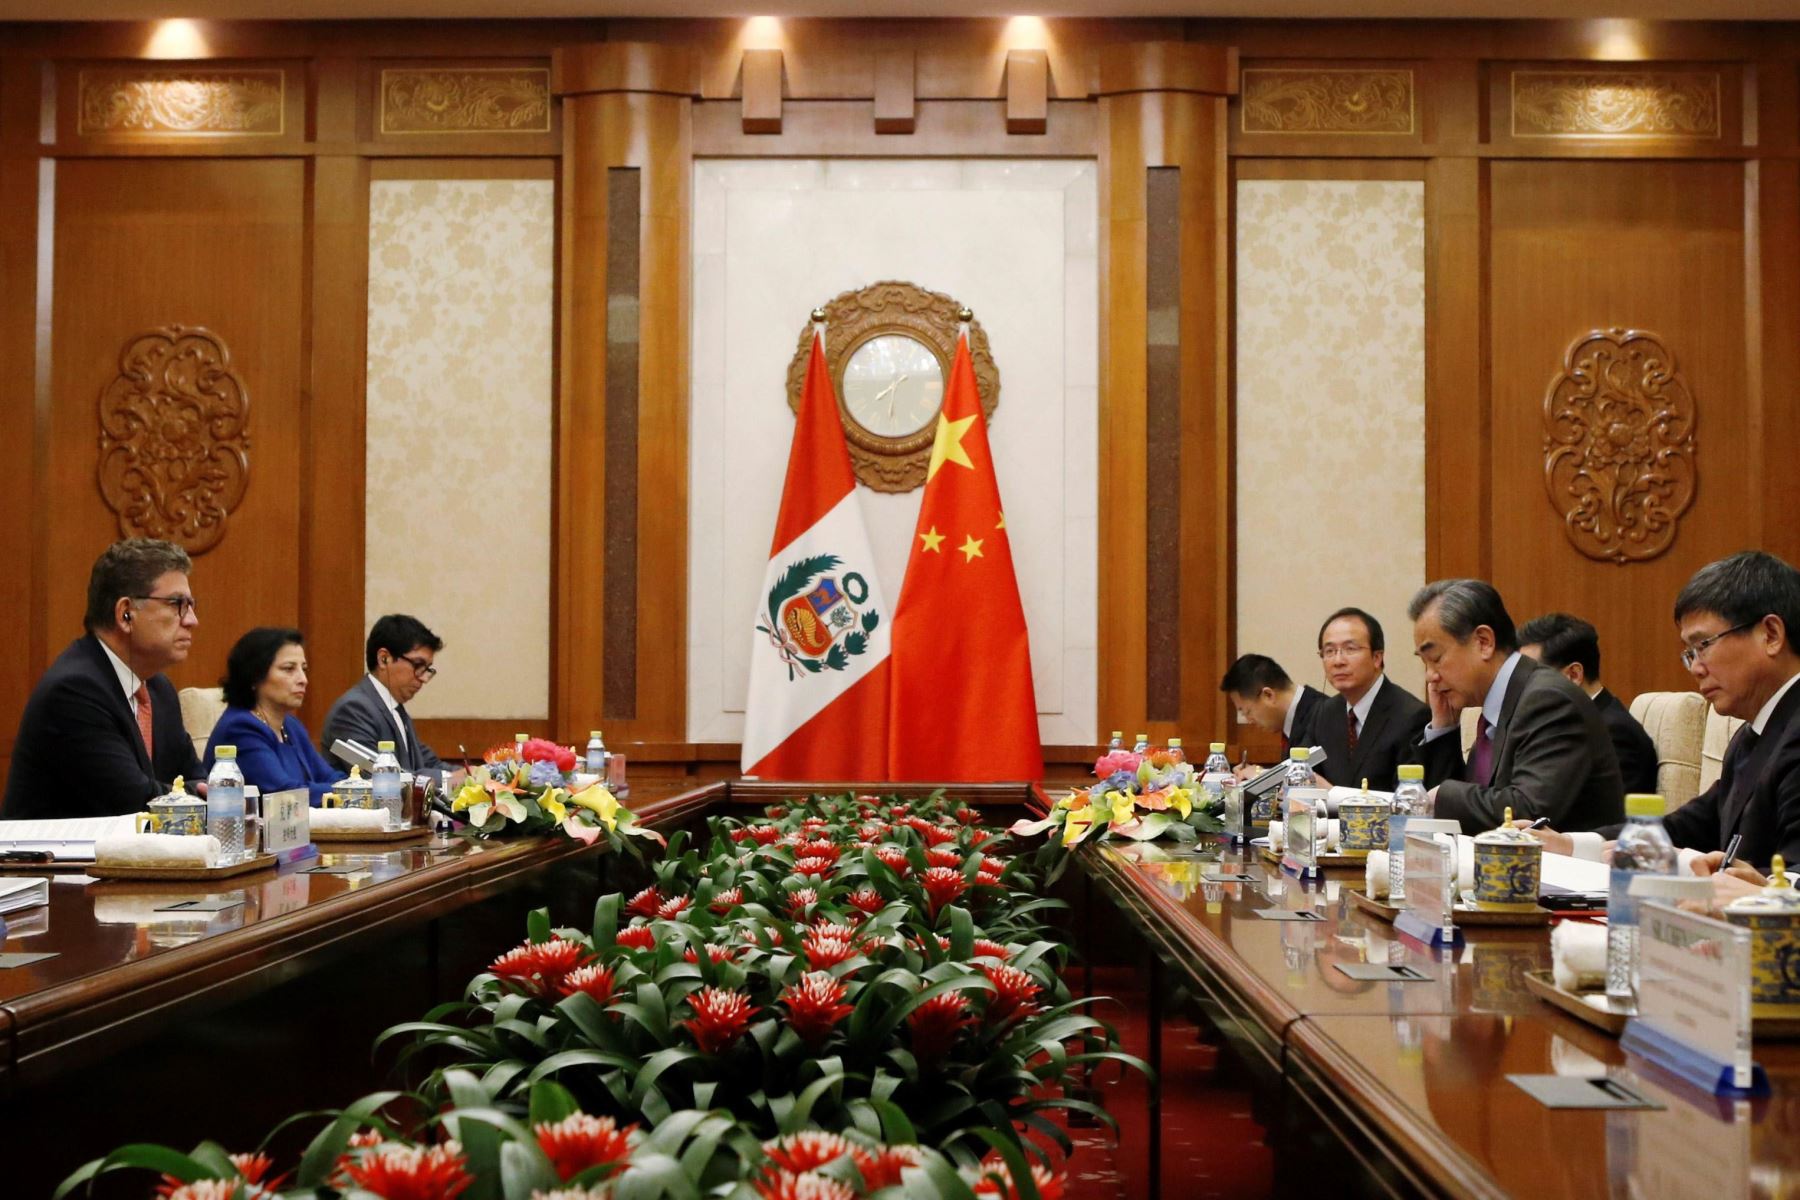 El Ministro de Relaciones Exteriores del Perú, Embajador Gustavo Meza-Cuadra, fue recibido en audiencia por el Consejero de Estado y Ministro de Relaciones Exteriores de China, Wang Yi. Foto: EFE